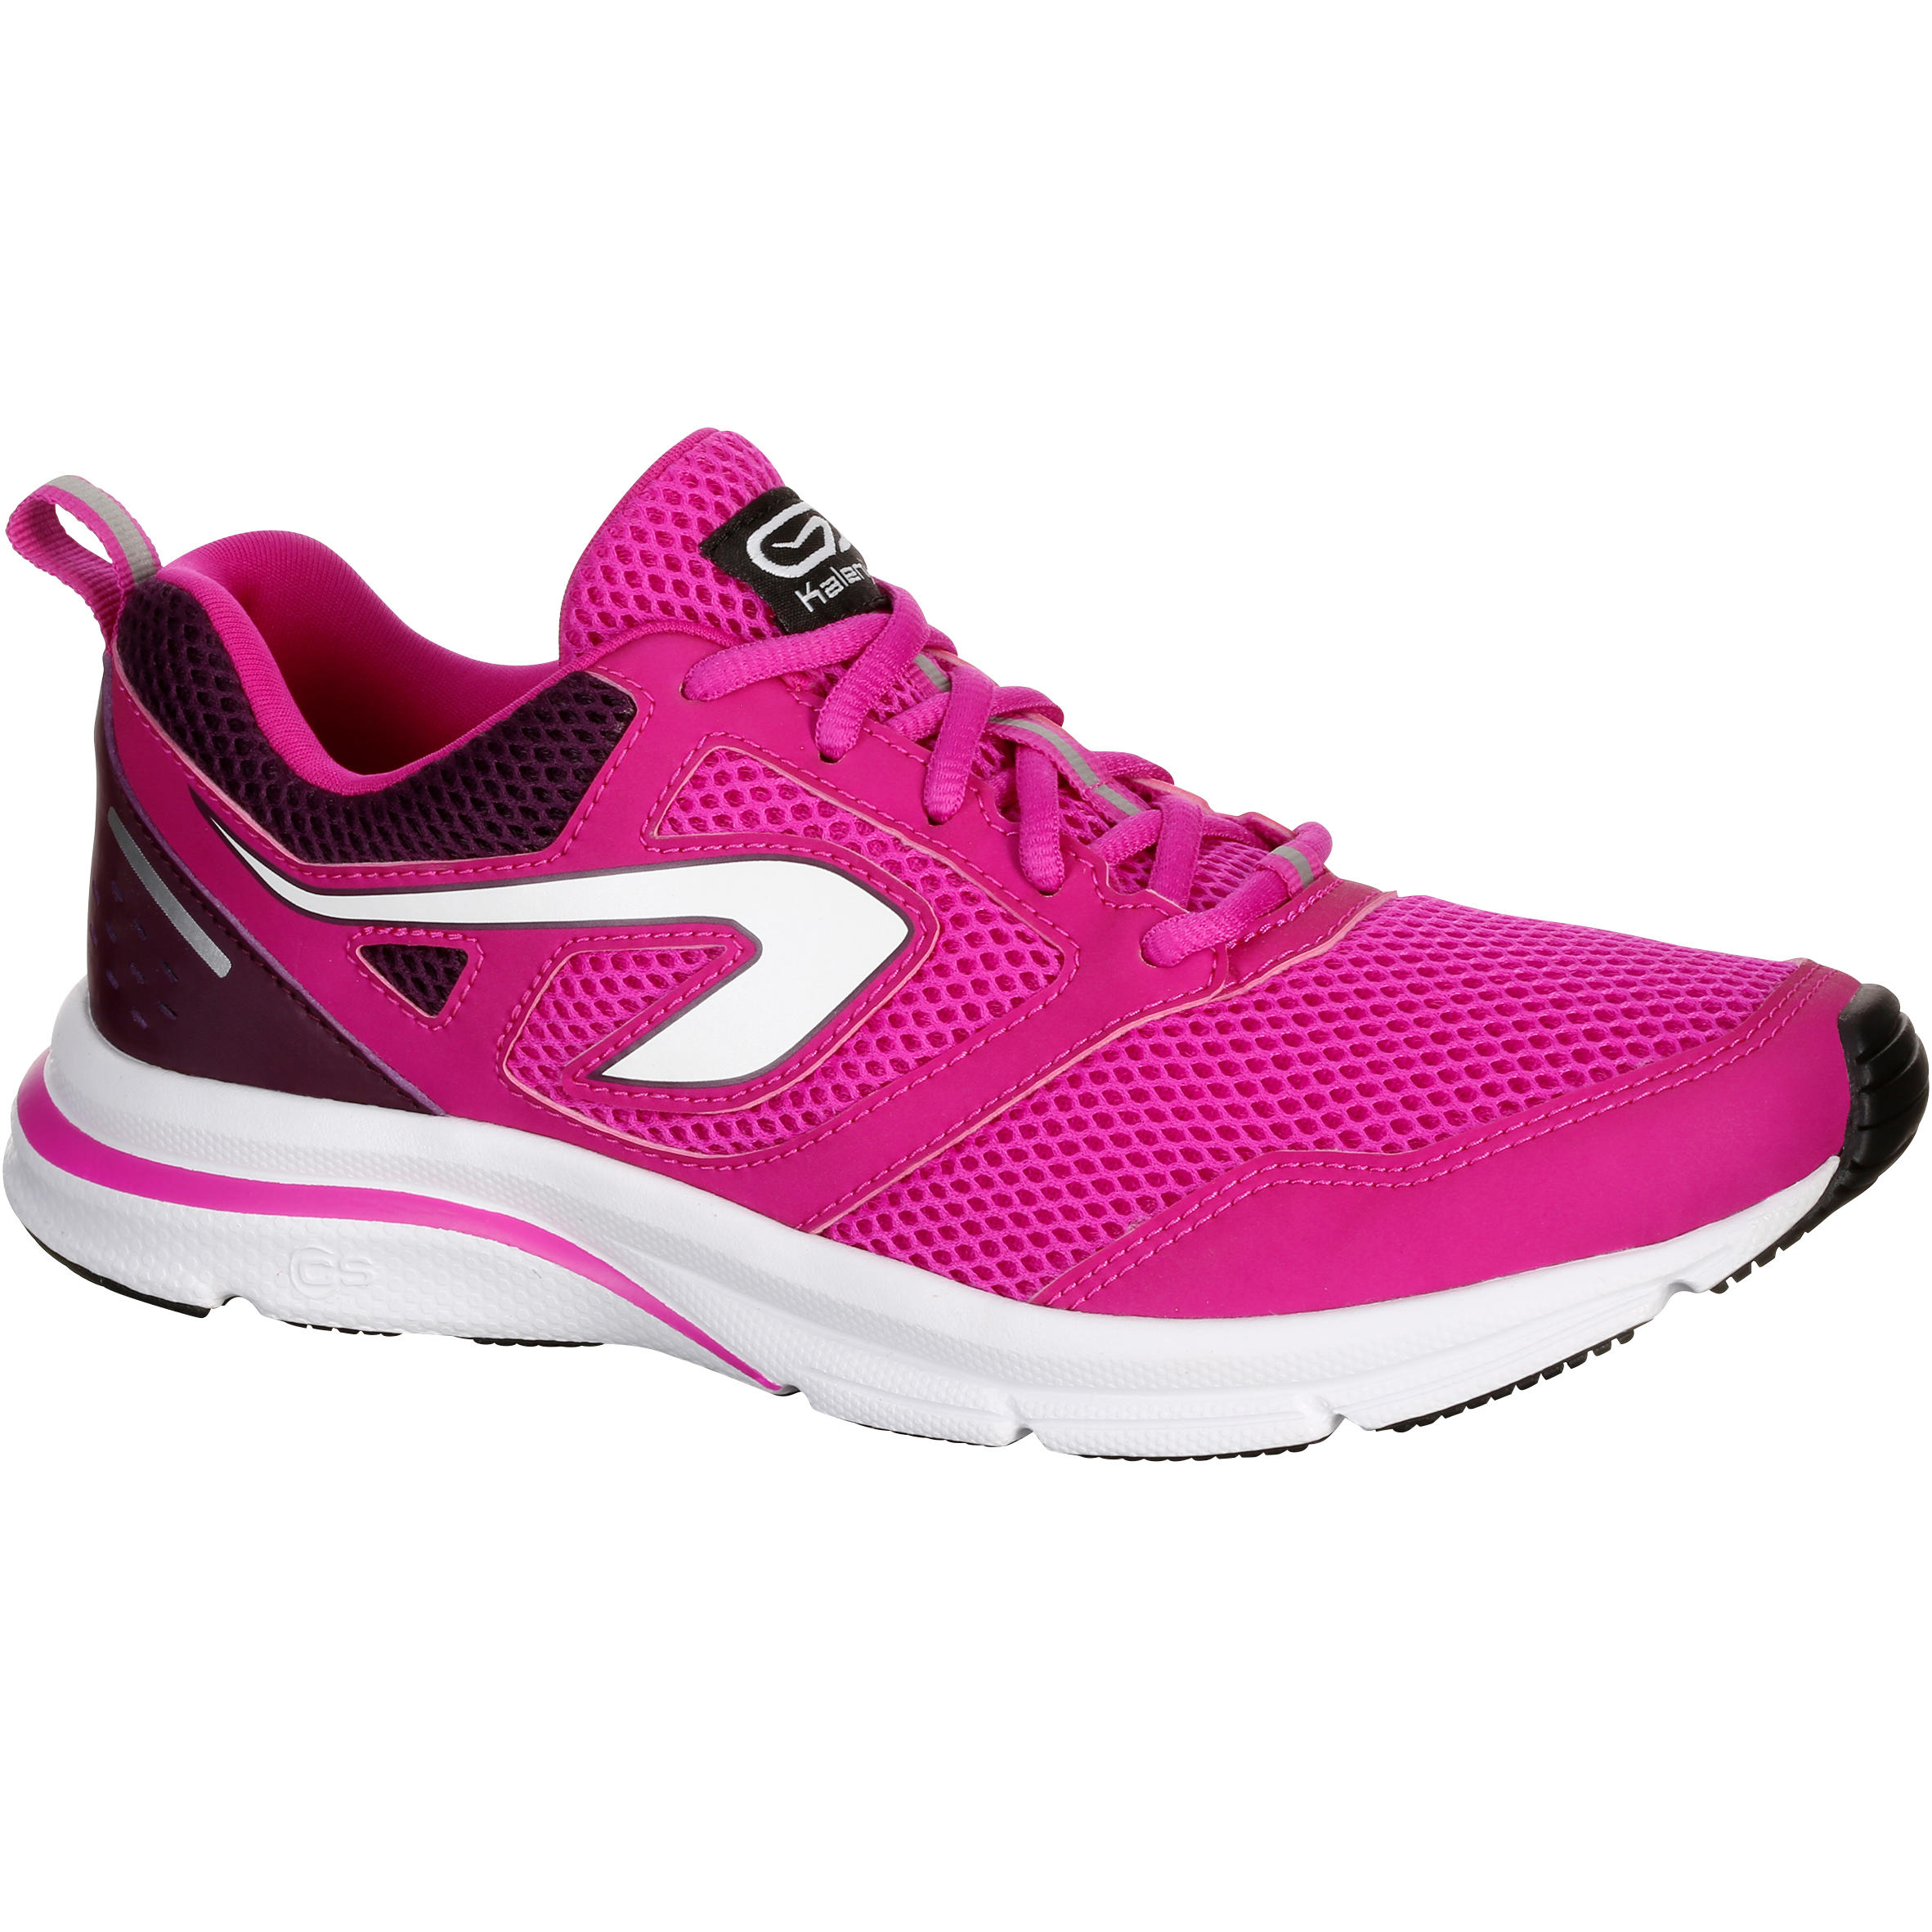 KALENJI Run Active Women's Running Shoes - Fuchsia 